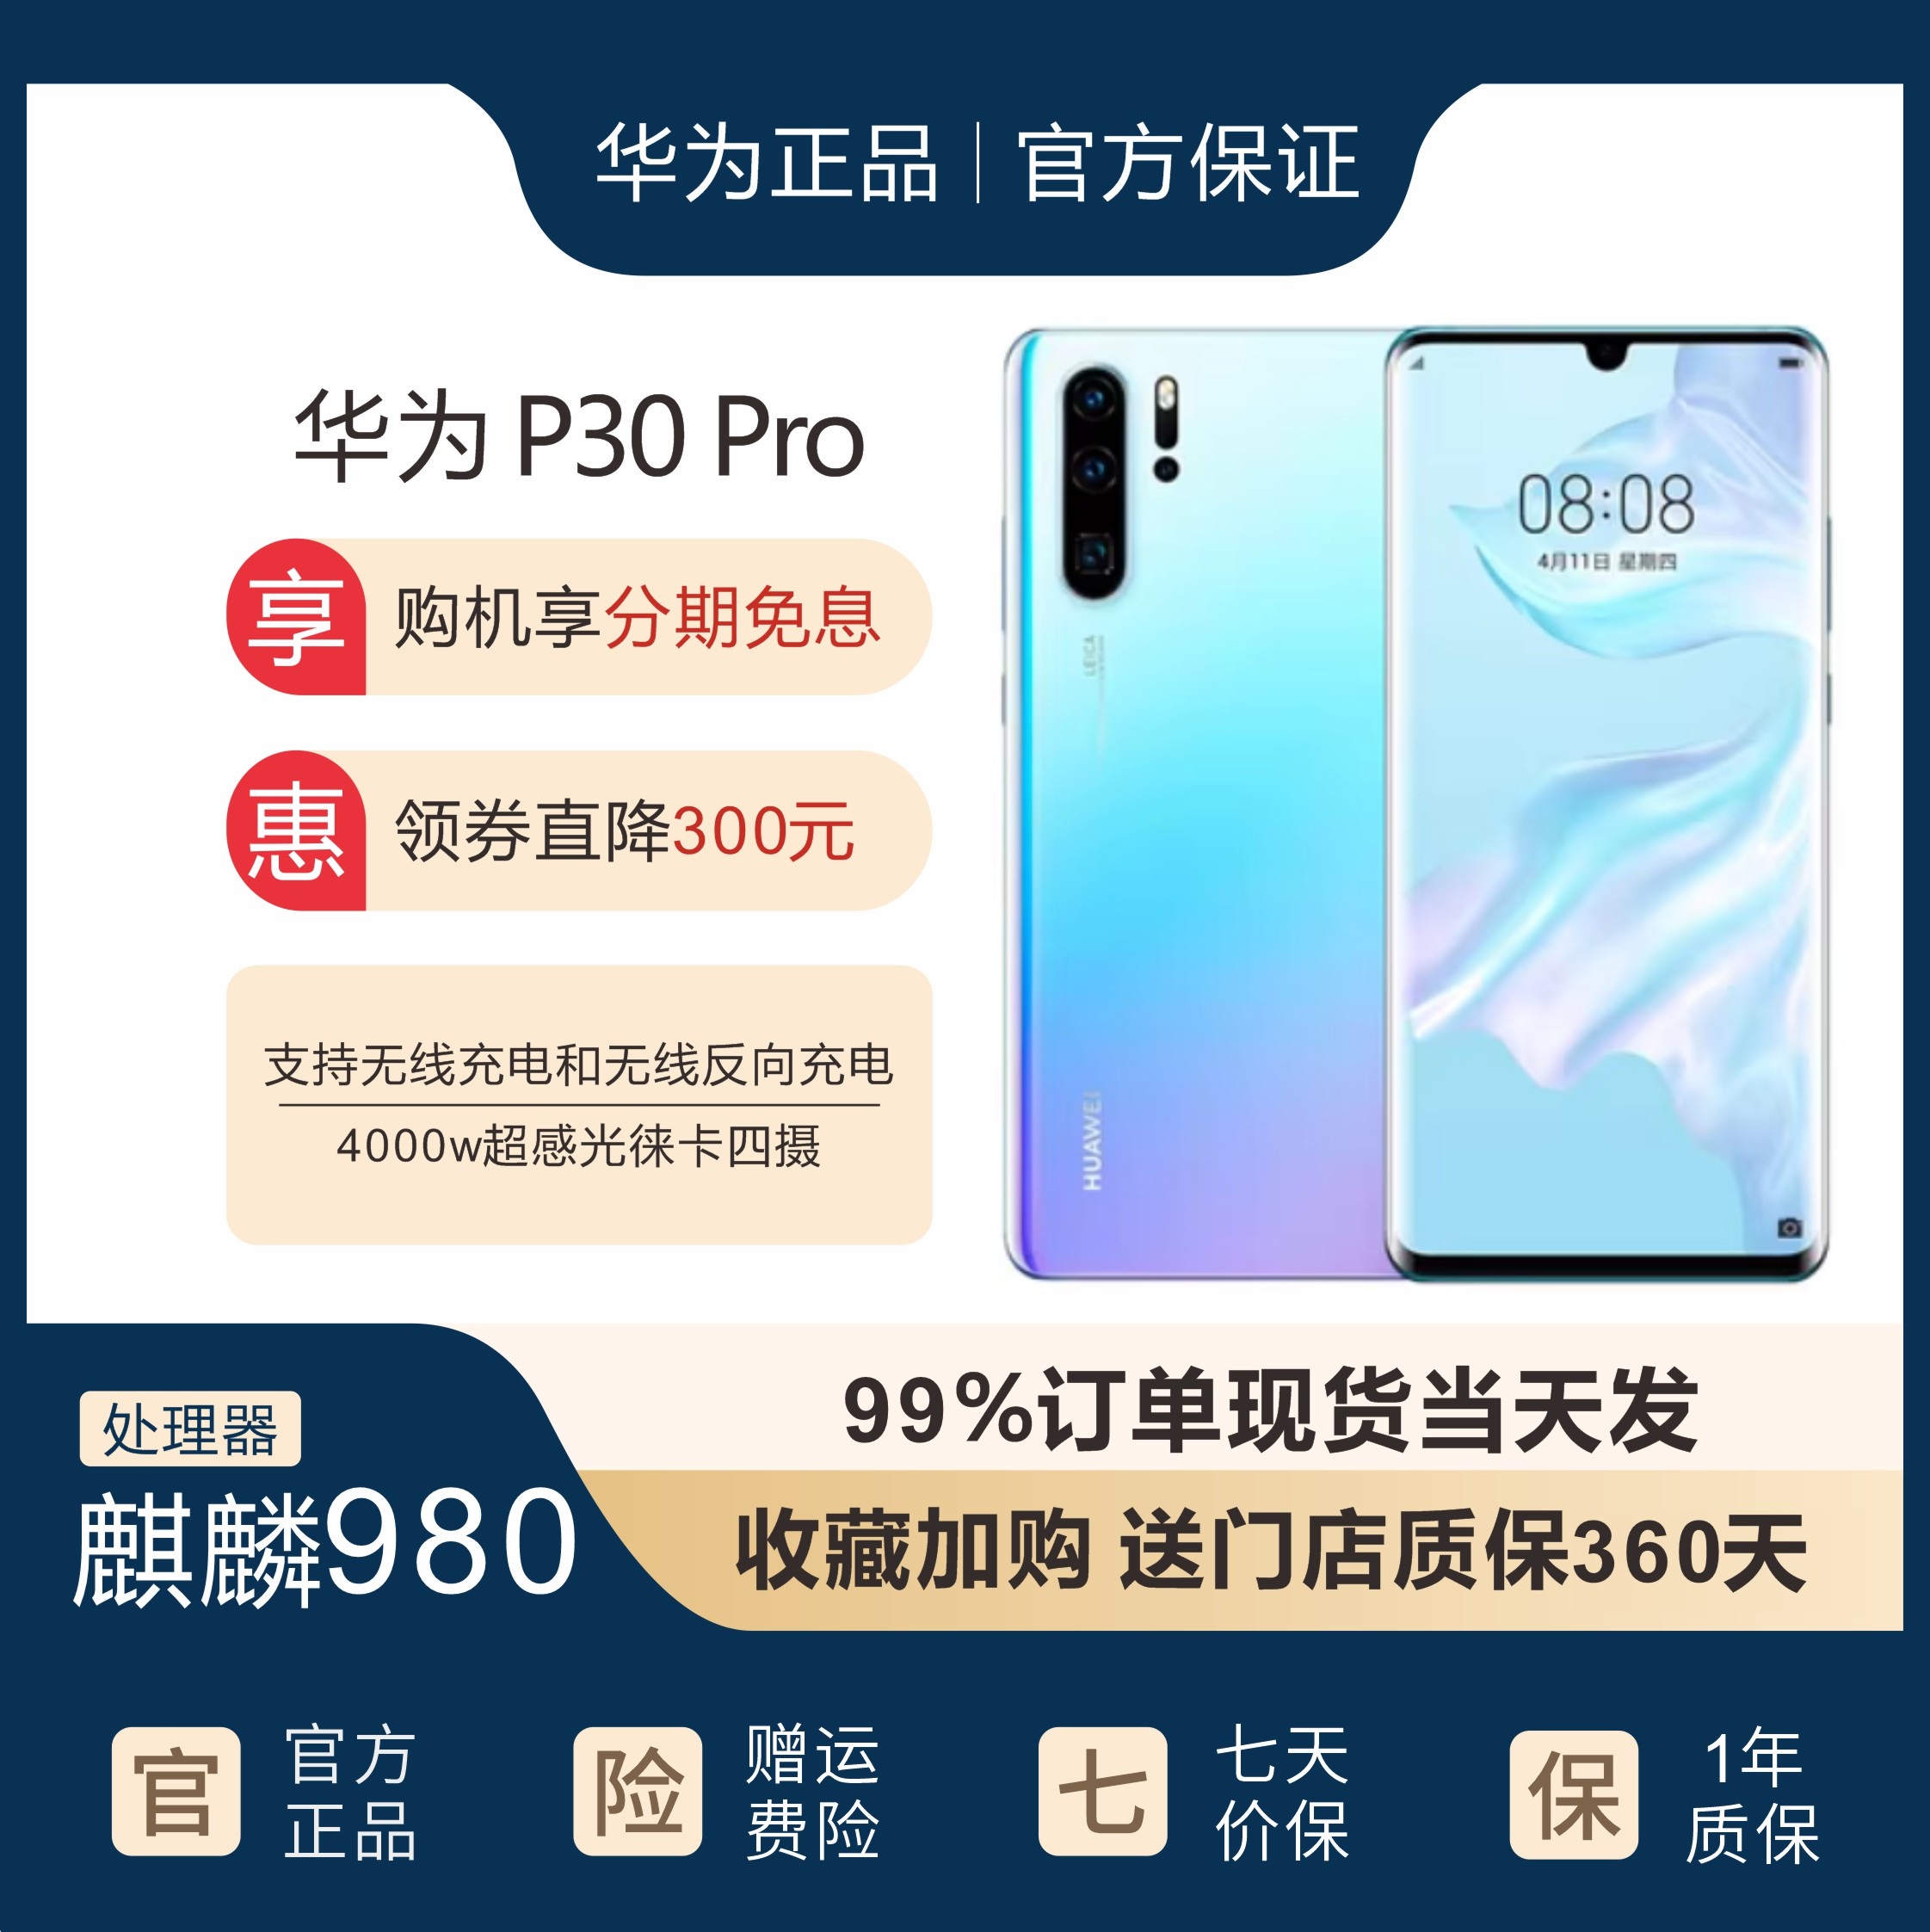 Huawei/华为 P30 PRO全网通麒麟980曲面屏学生游戏老人智能手机